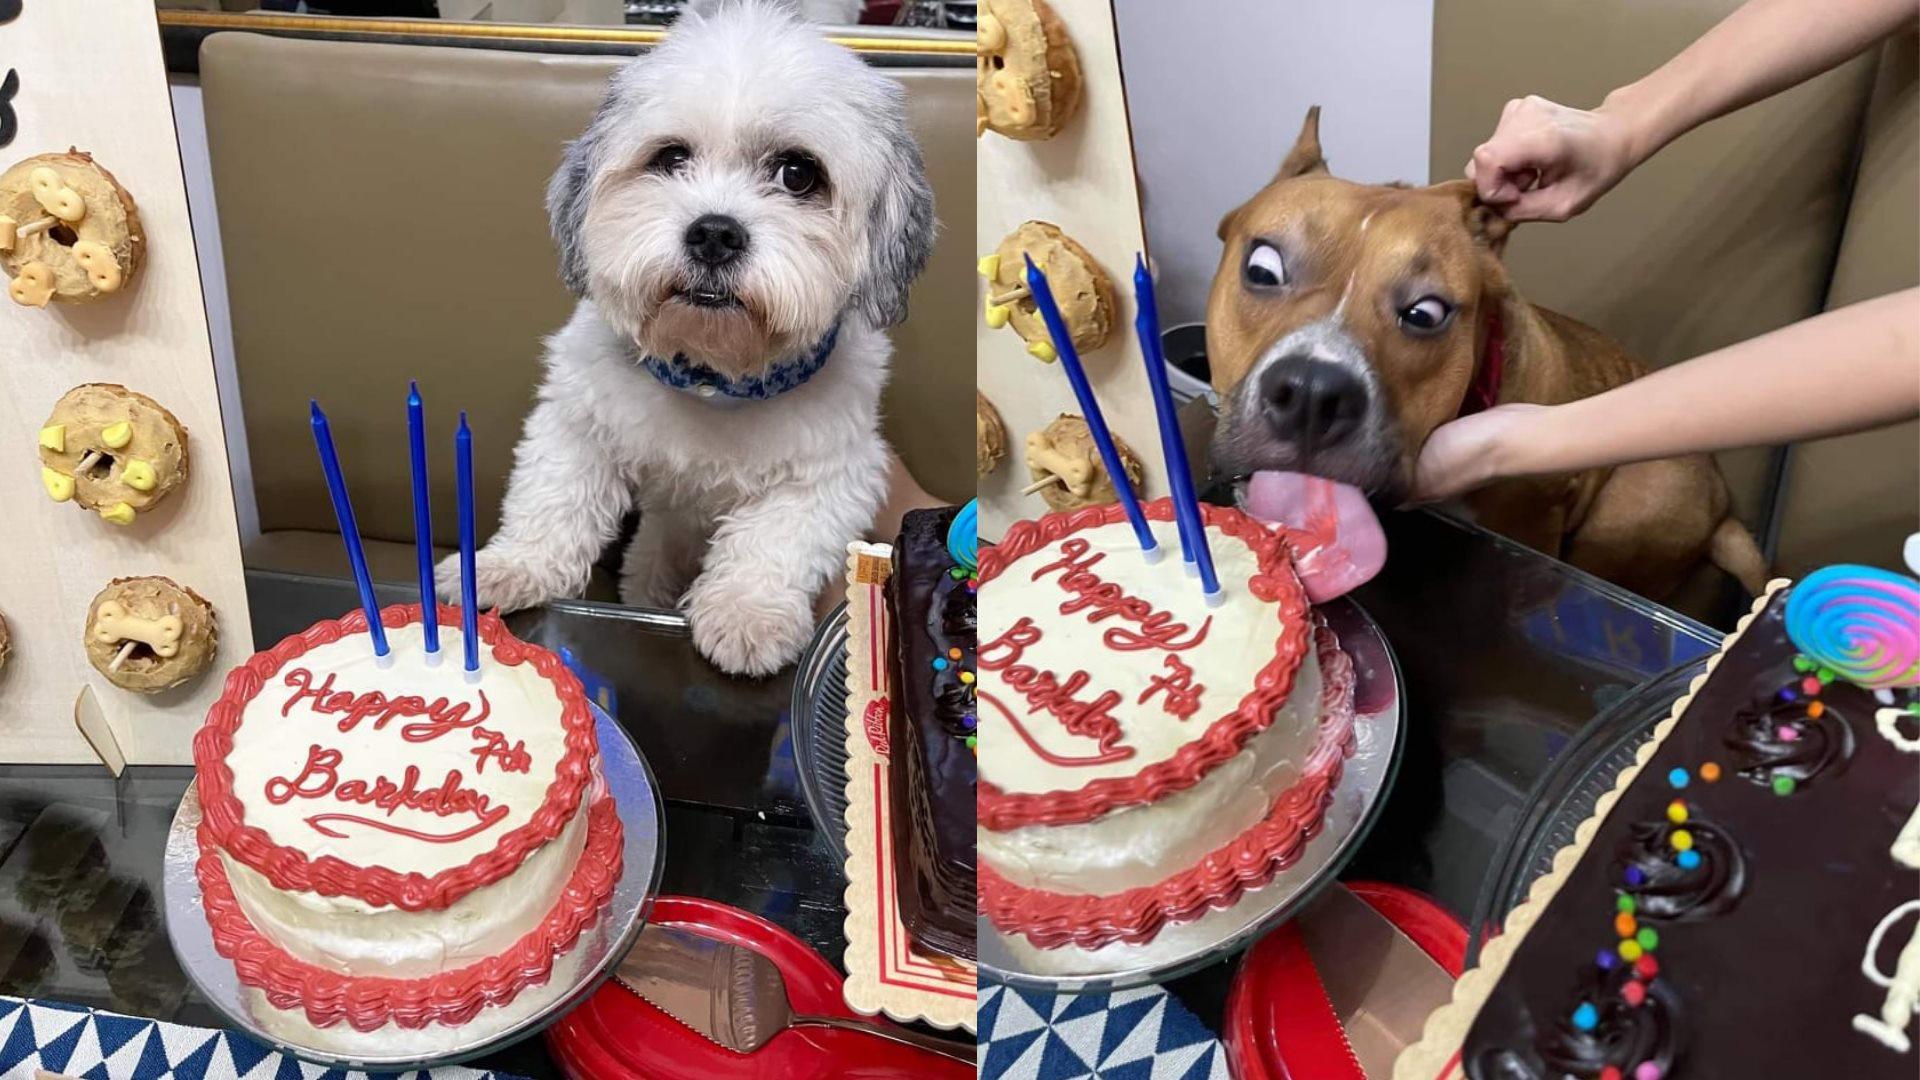 Anjing menjadi viral: American Bully makan kue di depan Shih Tzu, selebran ulang tahun